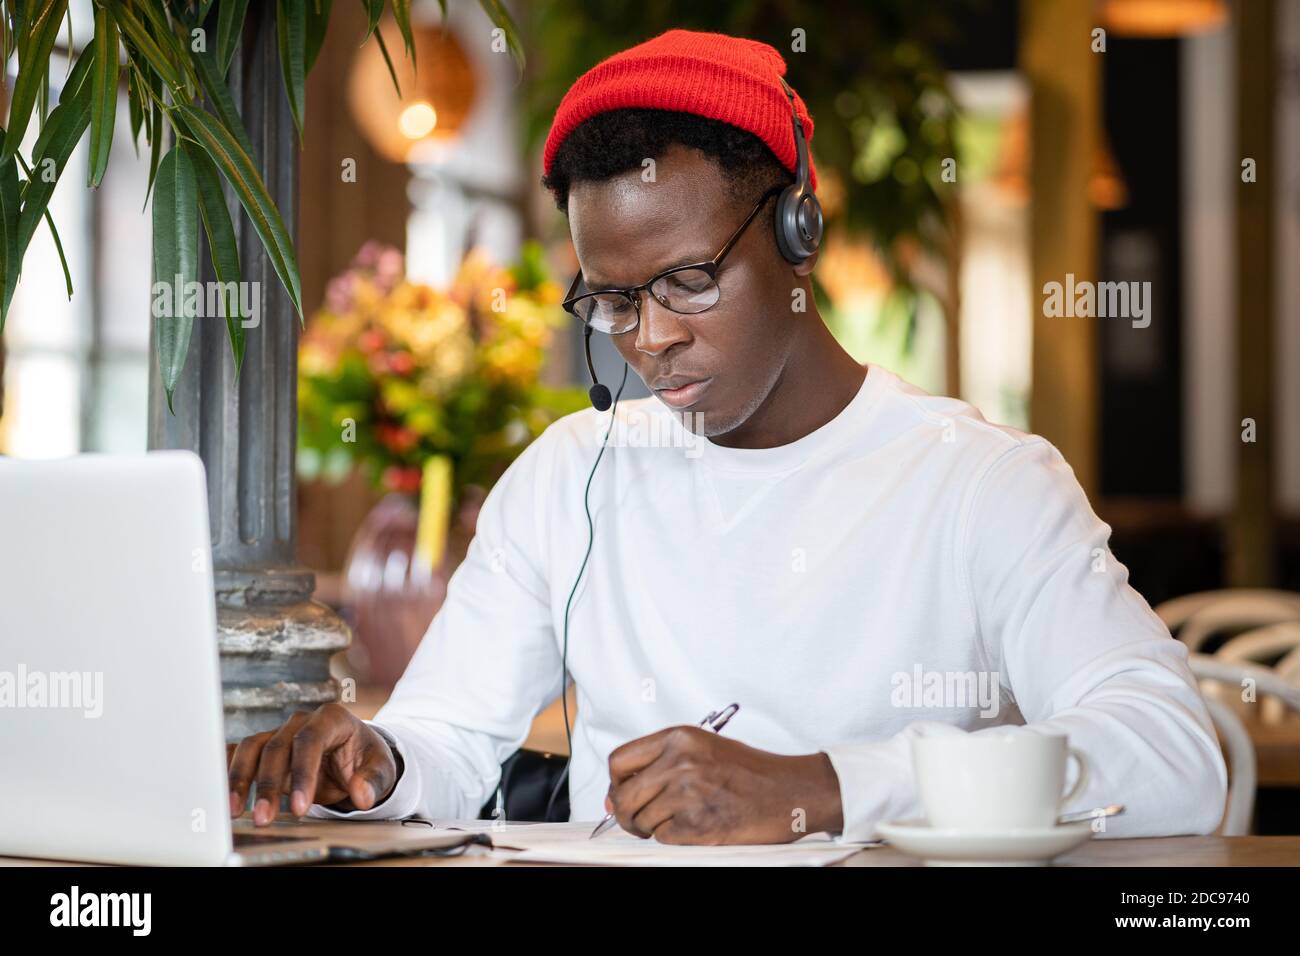 Homme noir millénaire concentré dans un casque porter un chapeau rouge, regarder un séminaire en ligne éducatif sur un ordinateur portable, travailler en ligne à distance dans un café, écouter une leçon audio Banque D'Images